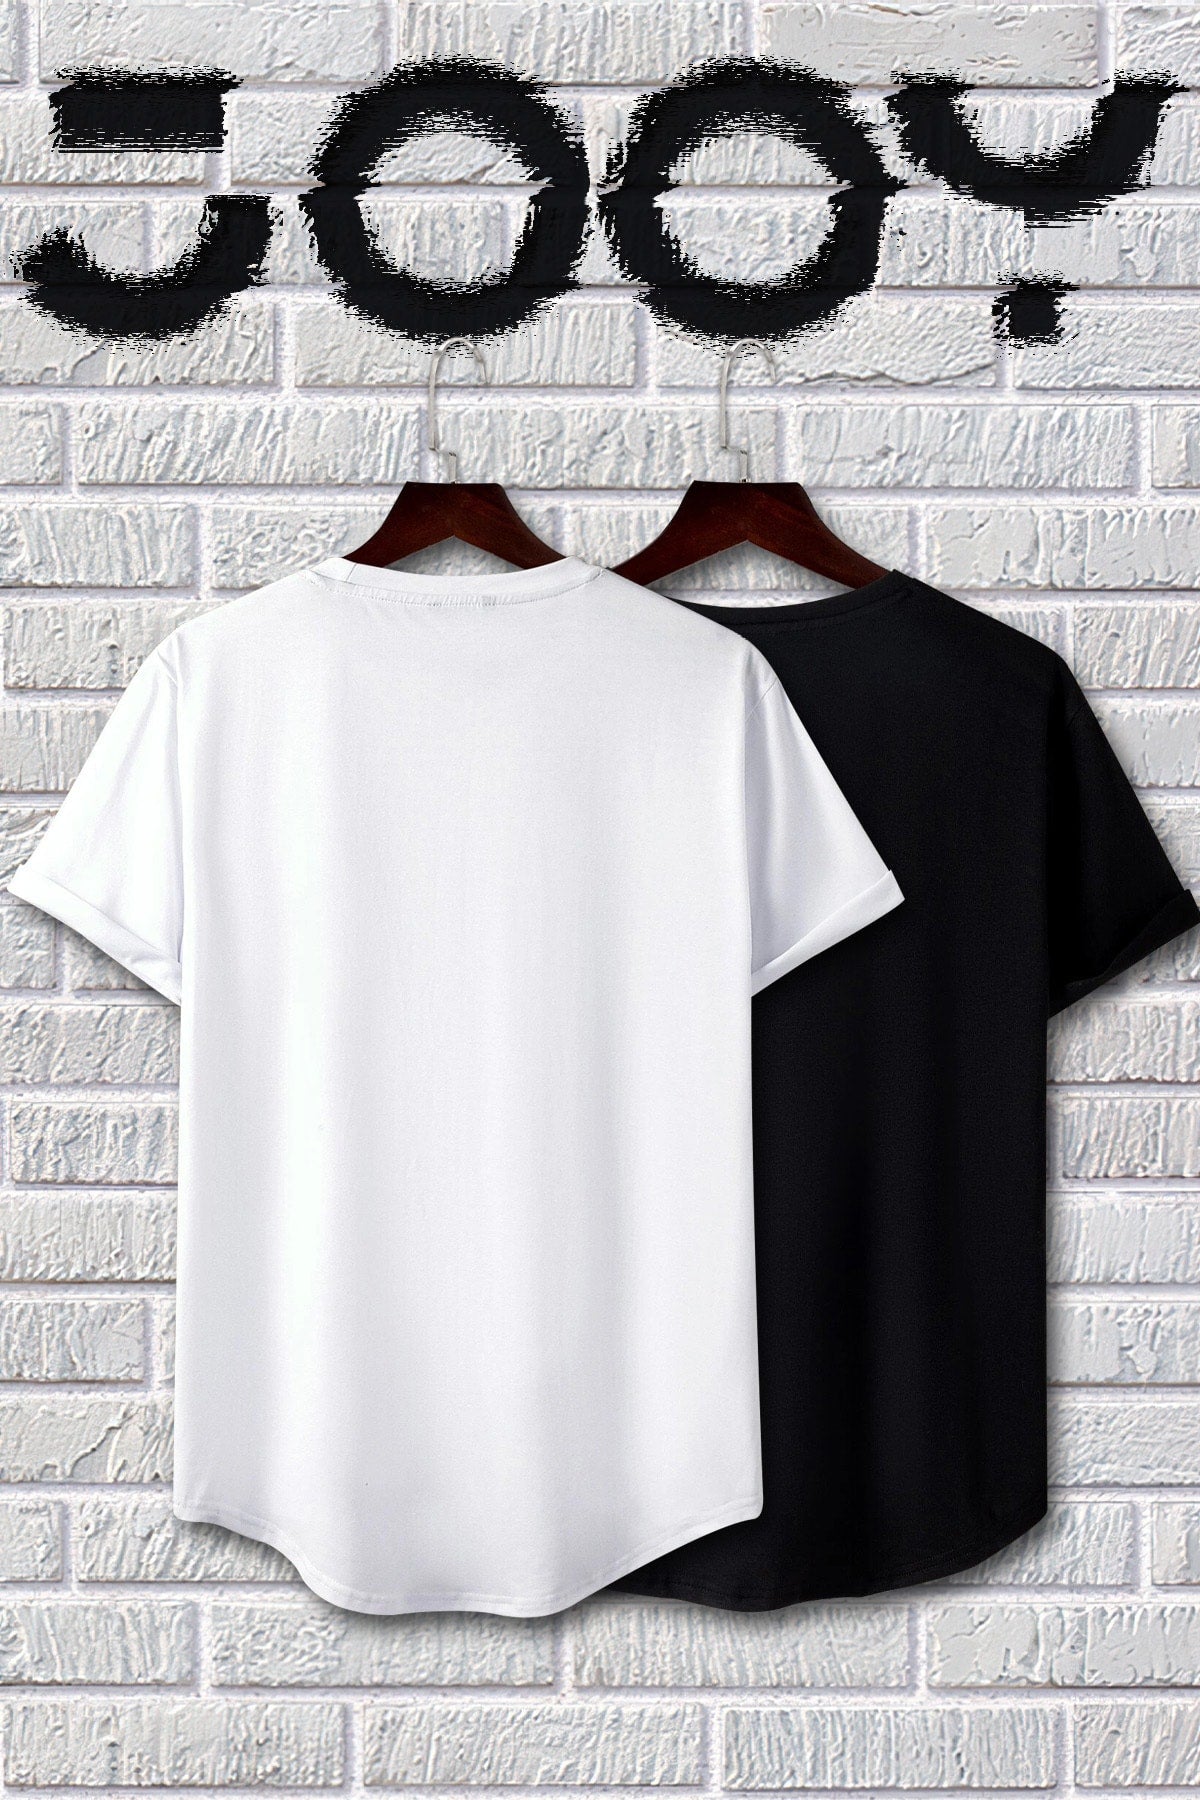 Черно-белая футболка с овальным вырезом и принтом Brooklyn, набор из 2 шт.